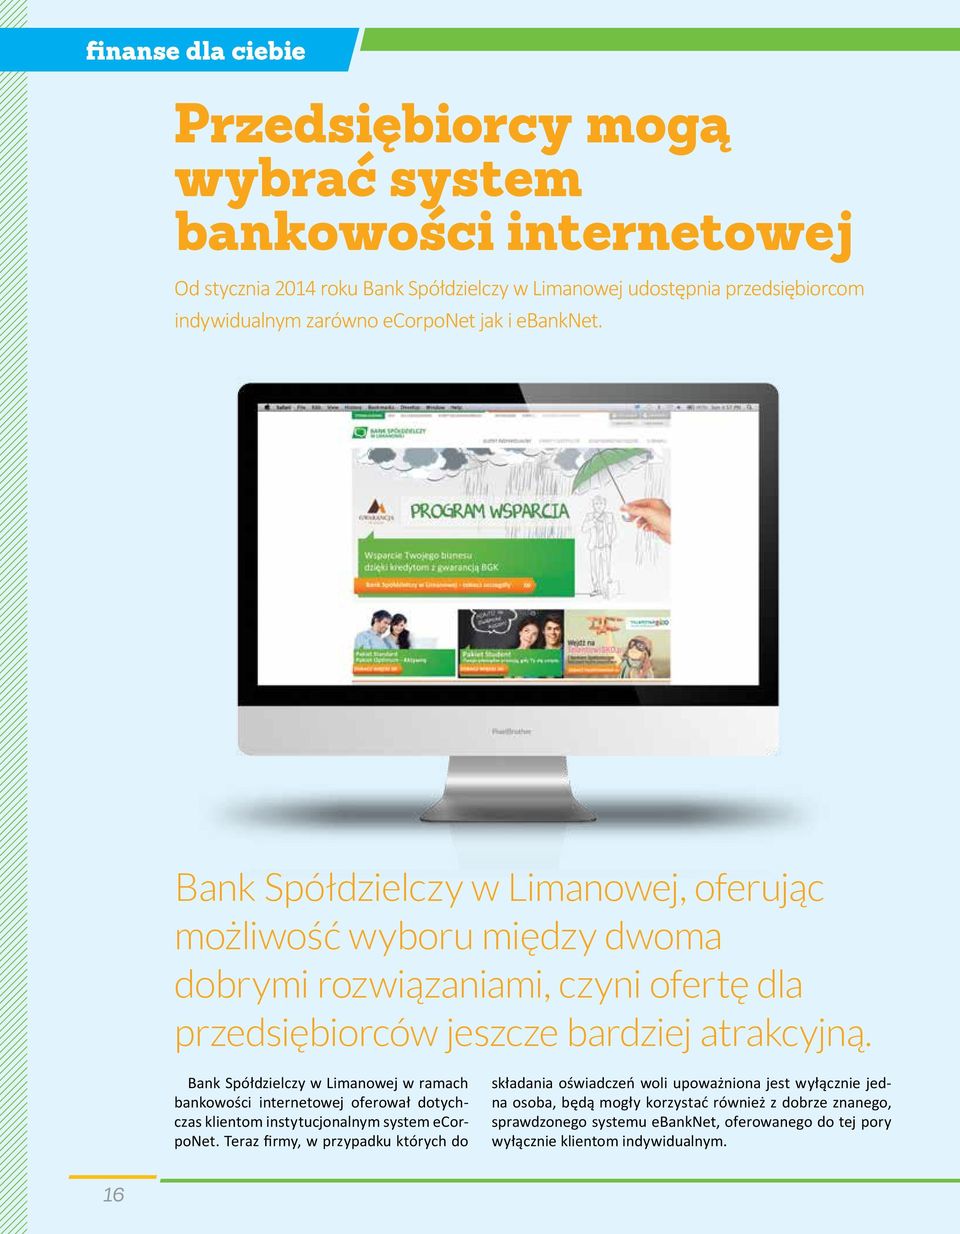 Bank Spółdzielczy w Limanowej w ramach bankowości internetowej oferował dotychczas klientom instytucjonalnym system ecorponet.